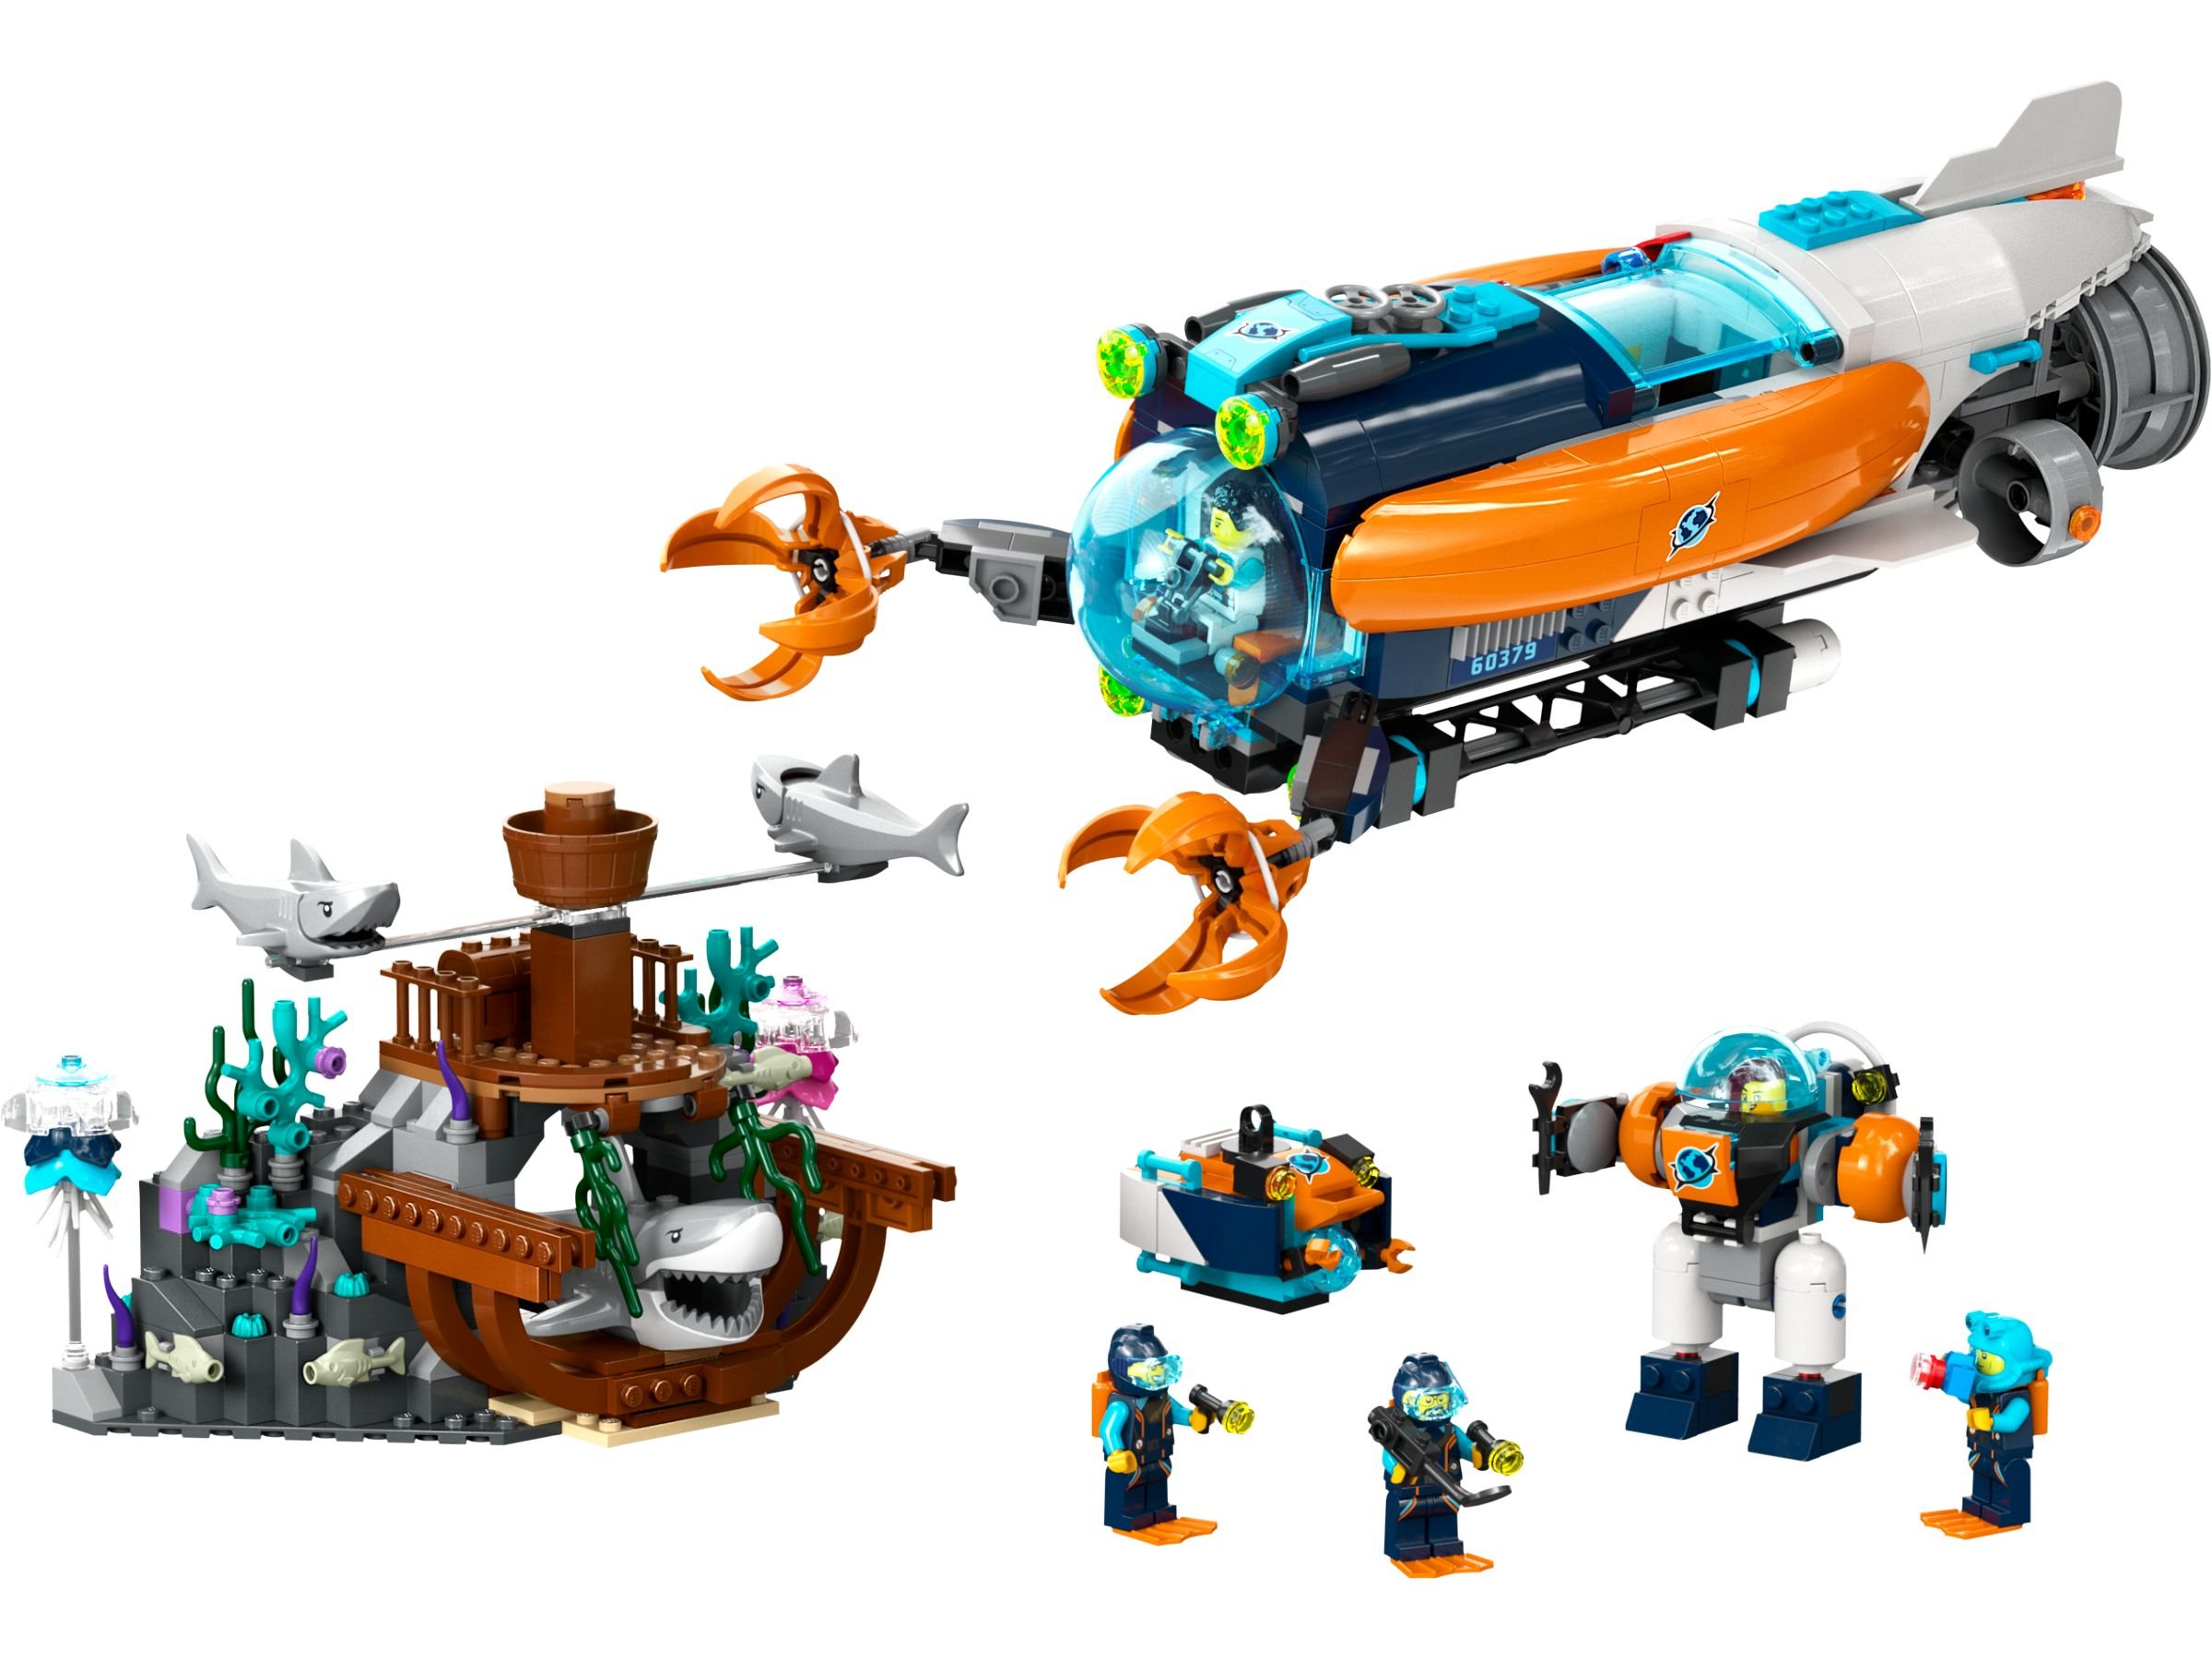 LEGO City 60379 Forscher-U-Boot